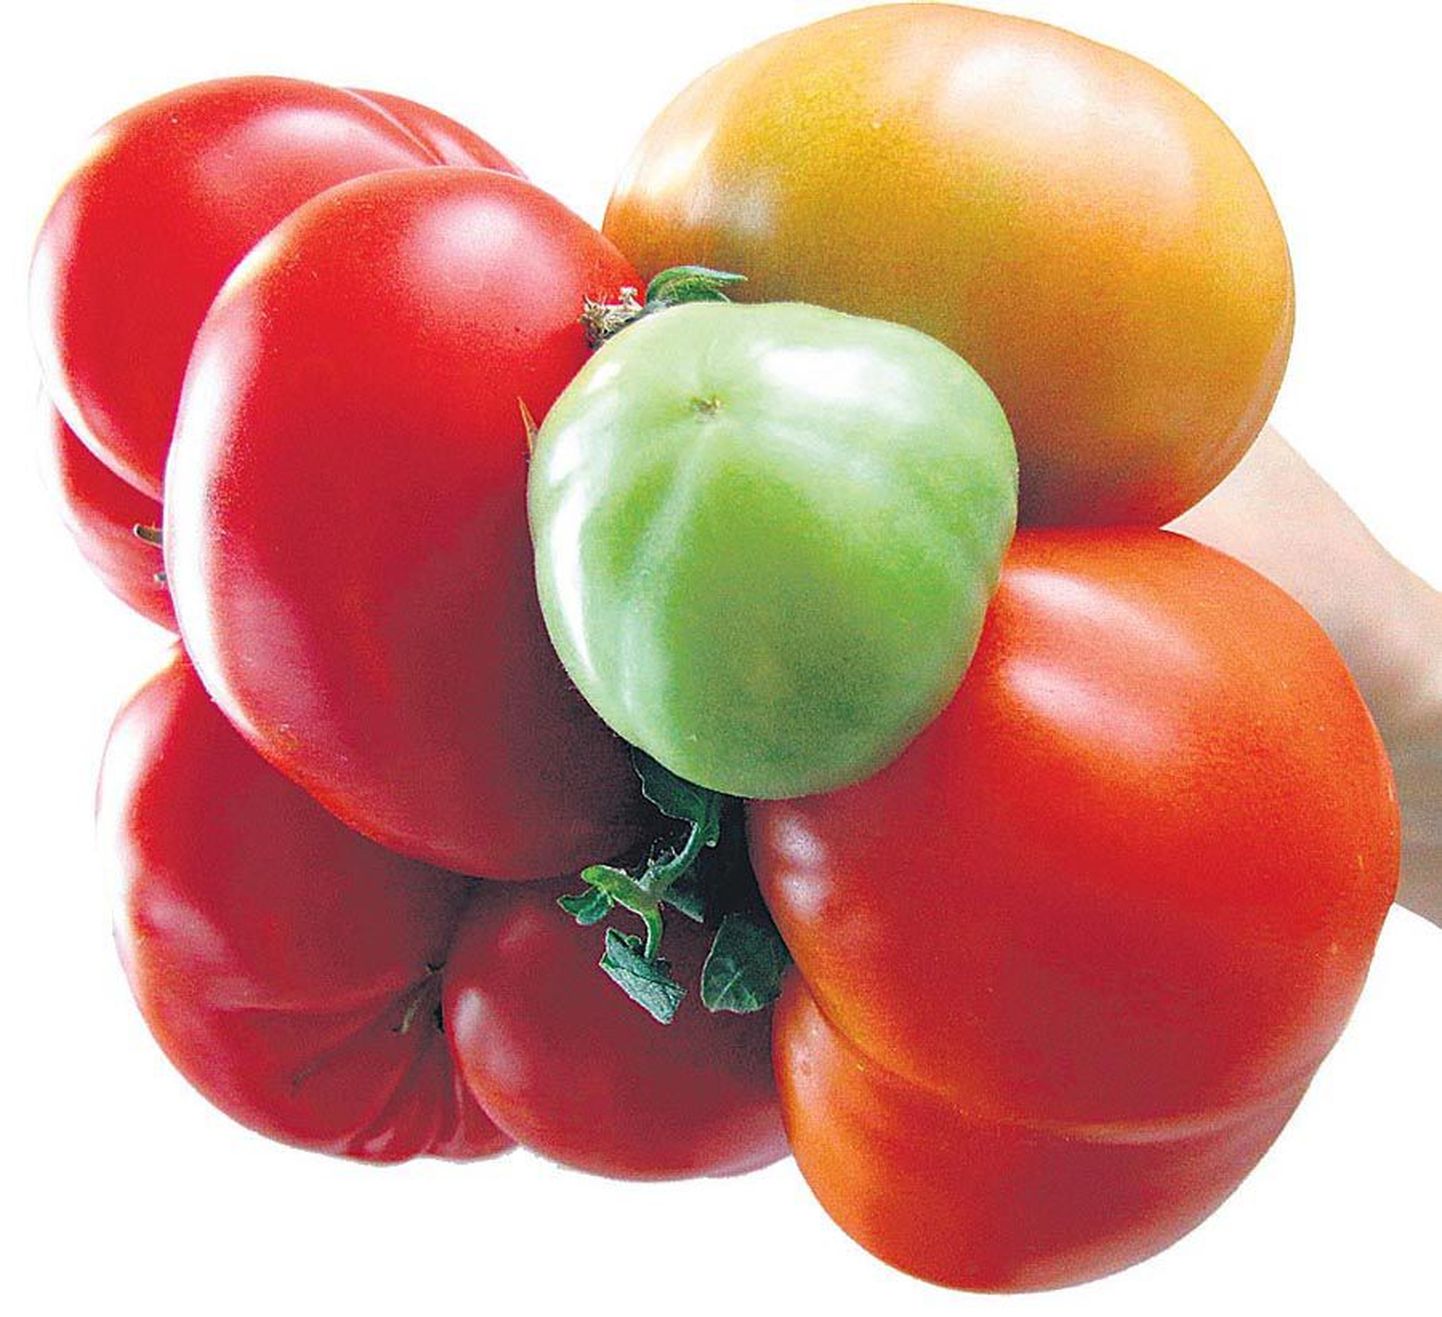 Kõik kaheksa tomatit korraga pildile ei mahtunud.